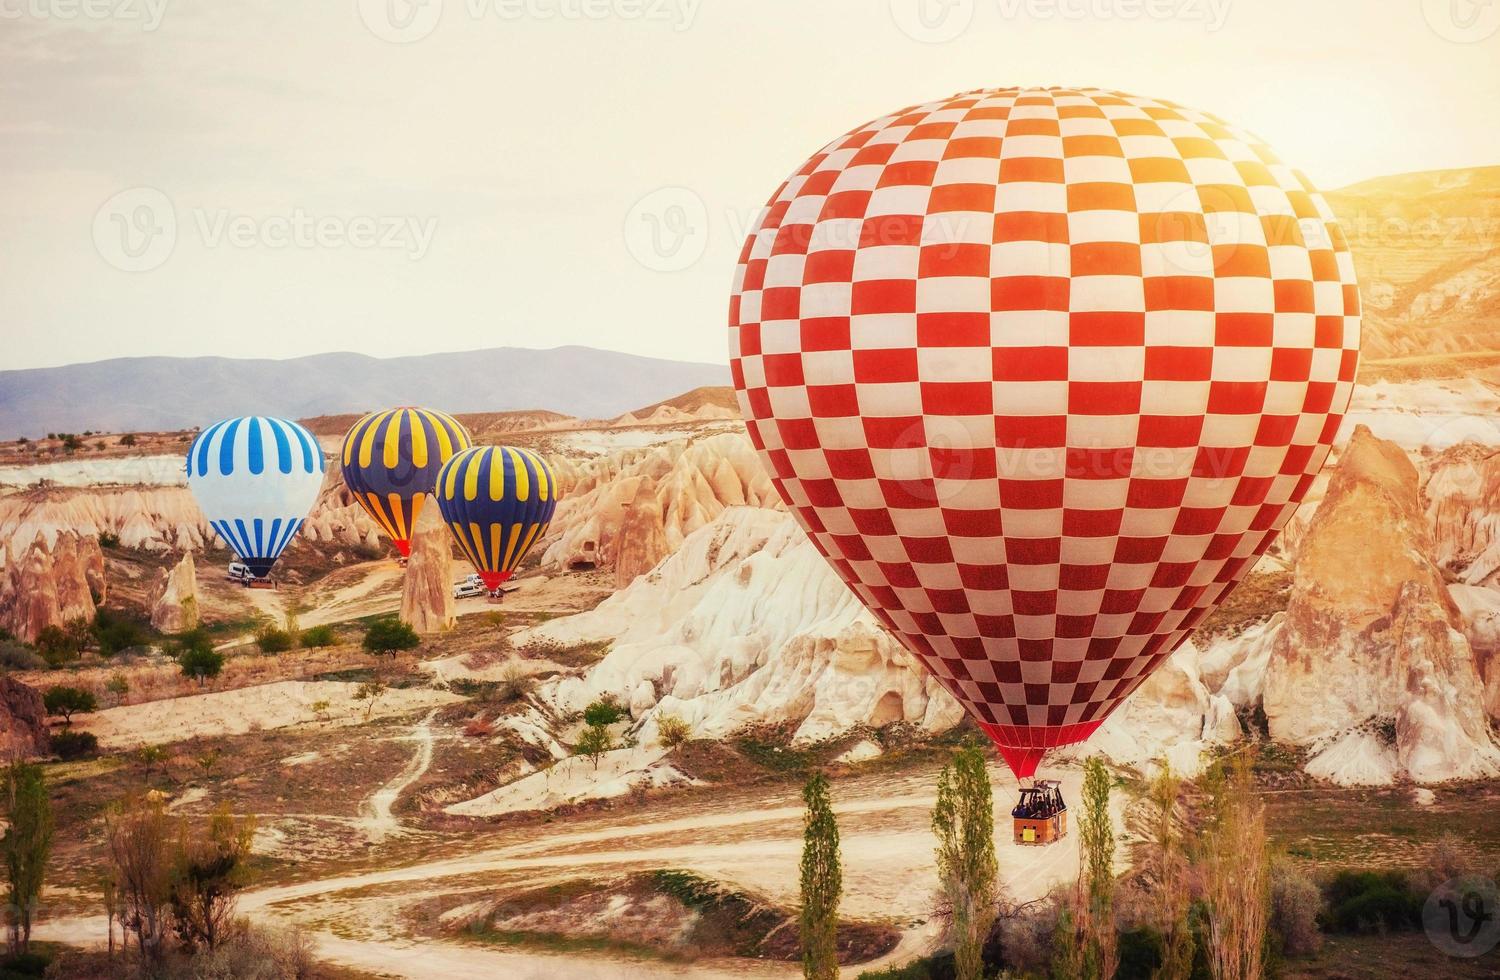 heteluchtballon die over rotslandschap vliegt in turkije. cappadocië foto